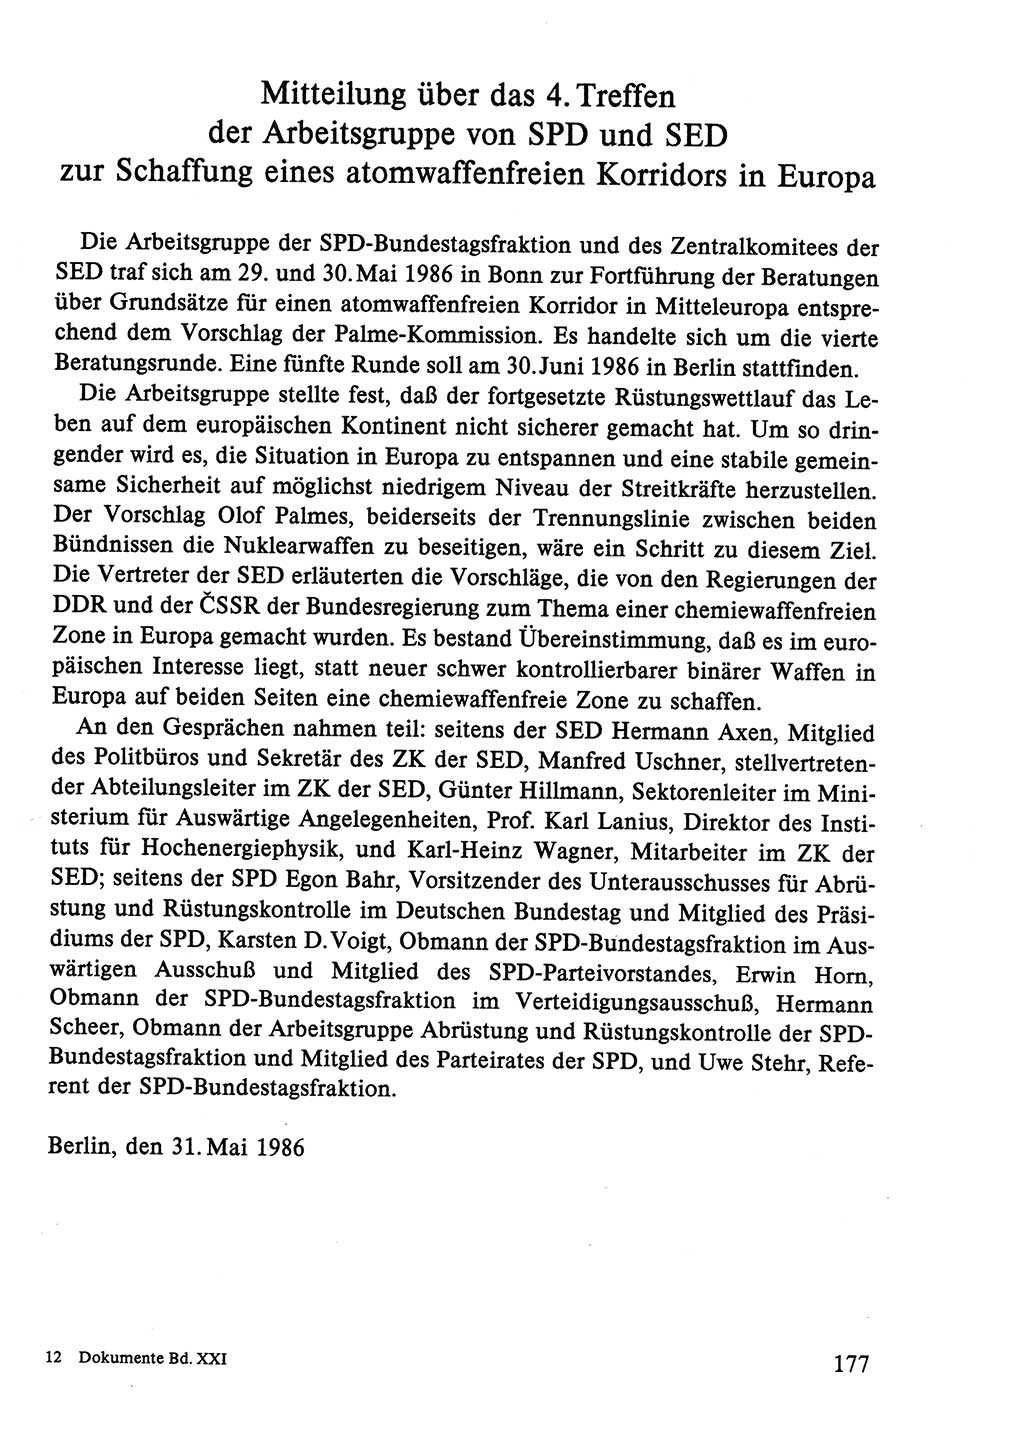 Dokumente der Sozialistischen Einheitspartei Deutschlands (SED) [Deutsche Demokratische Republik (DDR)] 1986-1987, Seite 177 (Dok. SED DDR 1986-1987, S. 177)